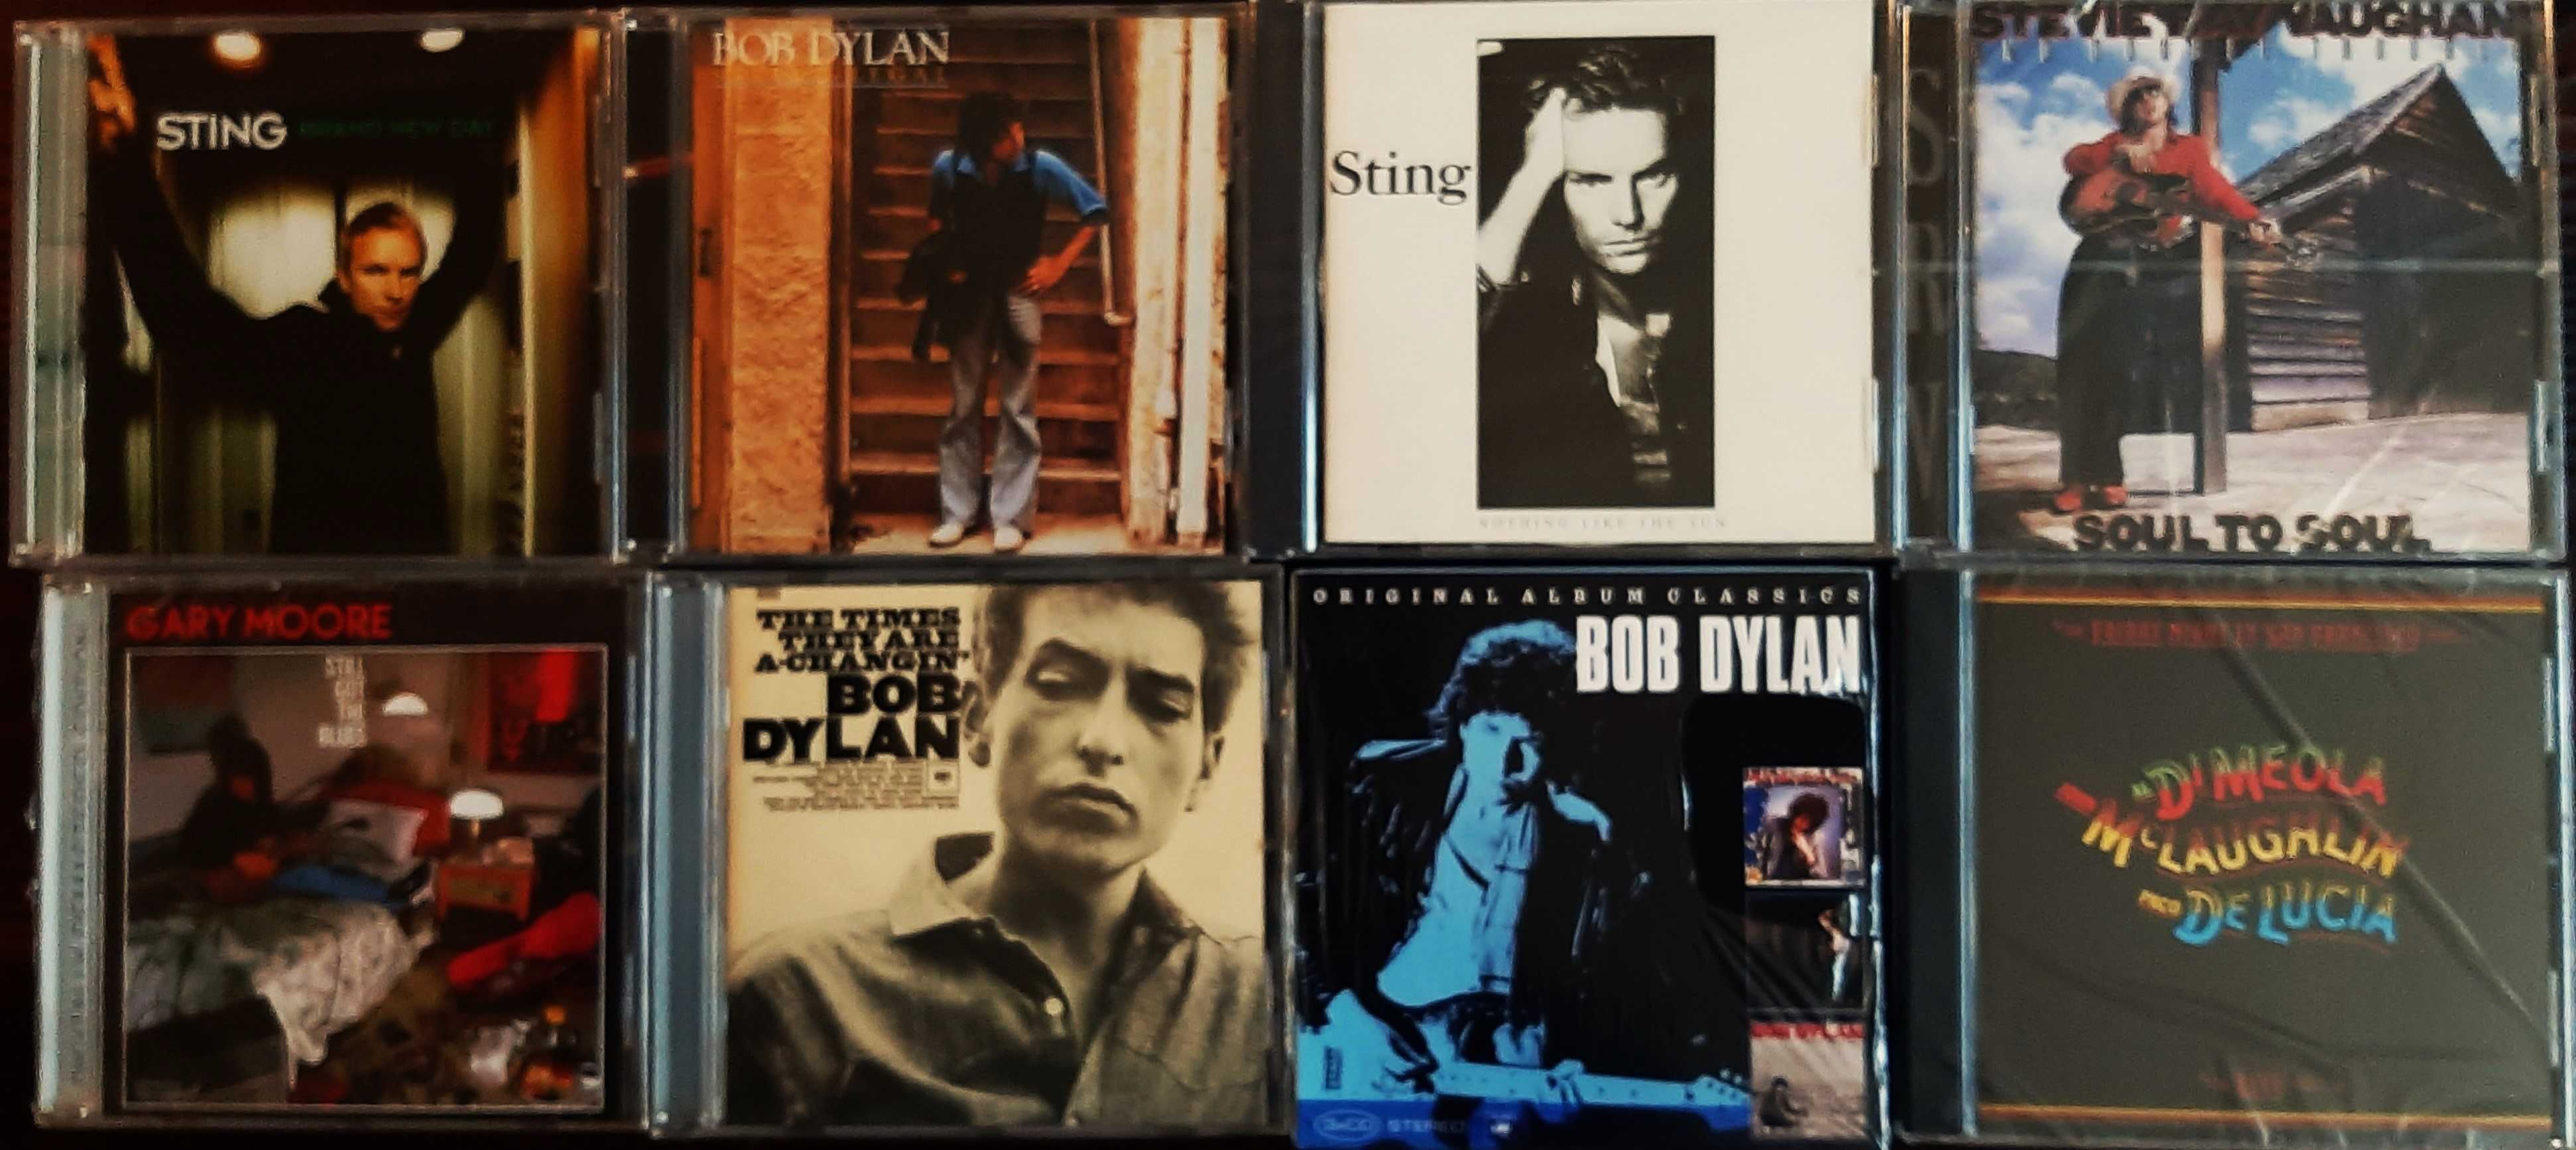 Polecam Wspaniały Album CD BOB DYLAN -Album Times They Are Changin